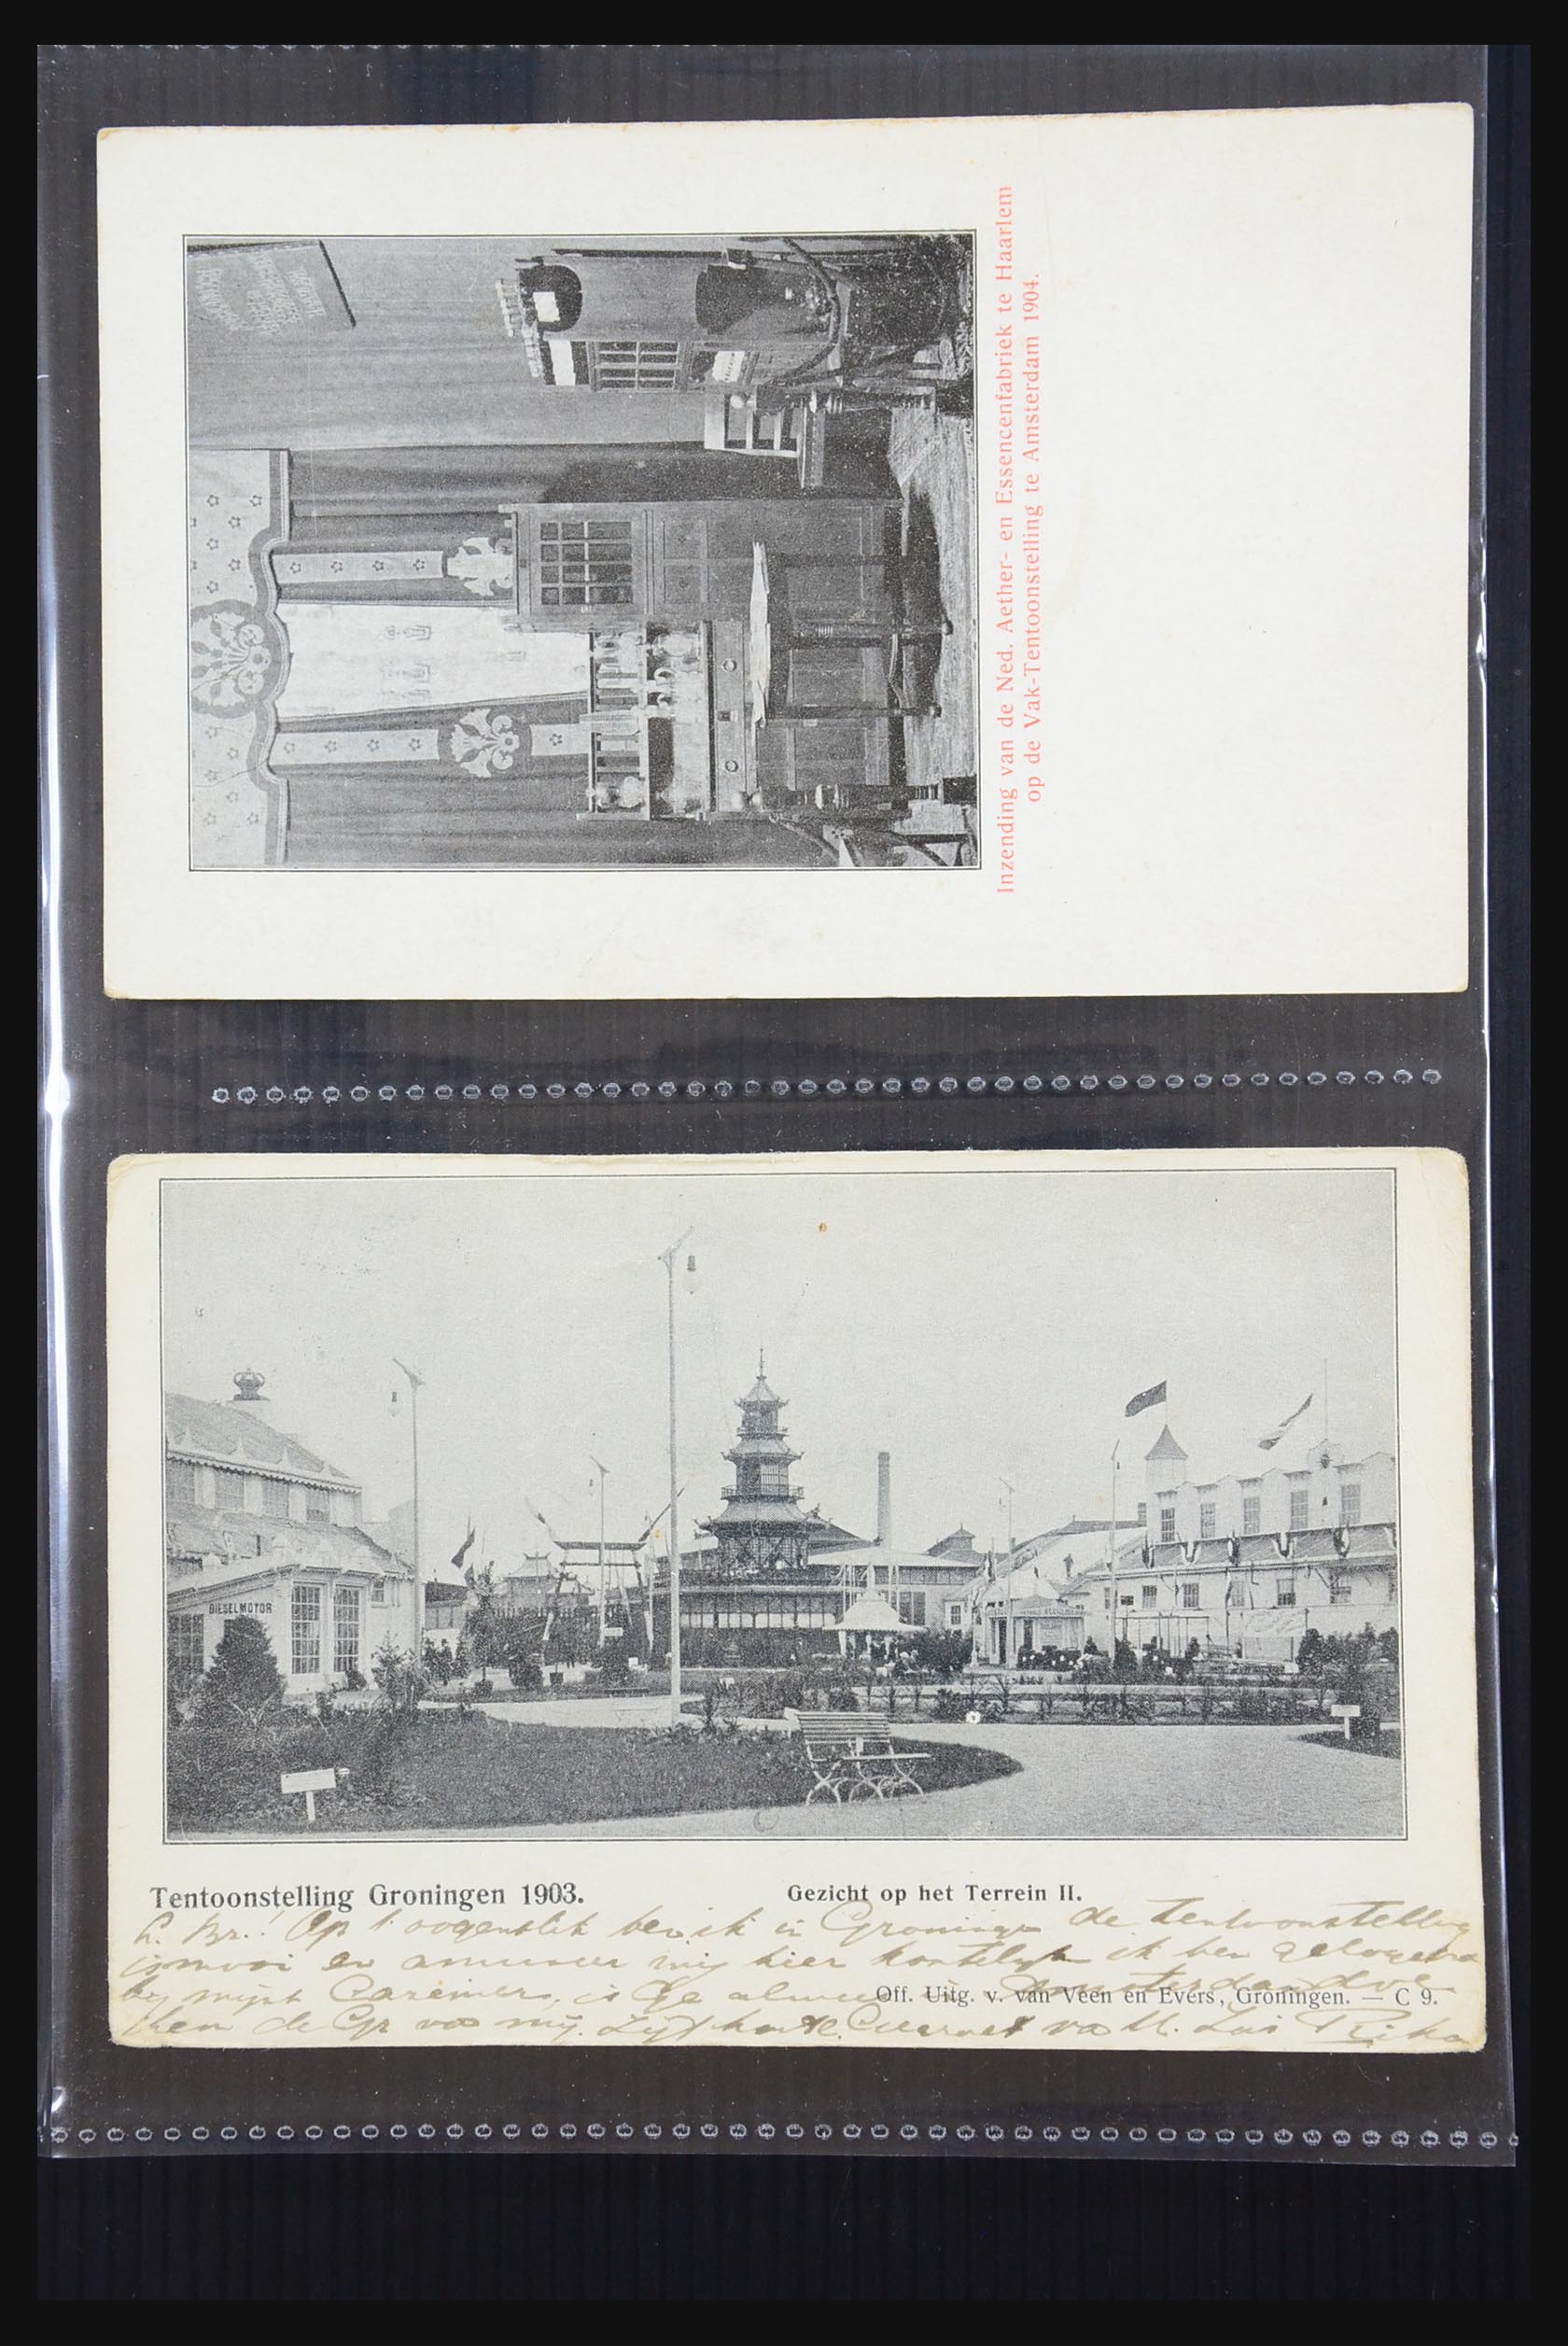 31338 005 - 31338 Nederland ansichtkaarten 1897-1914.